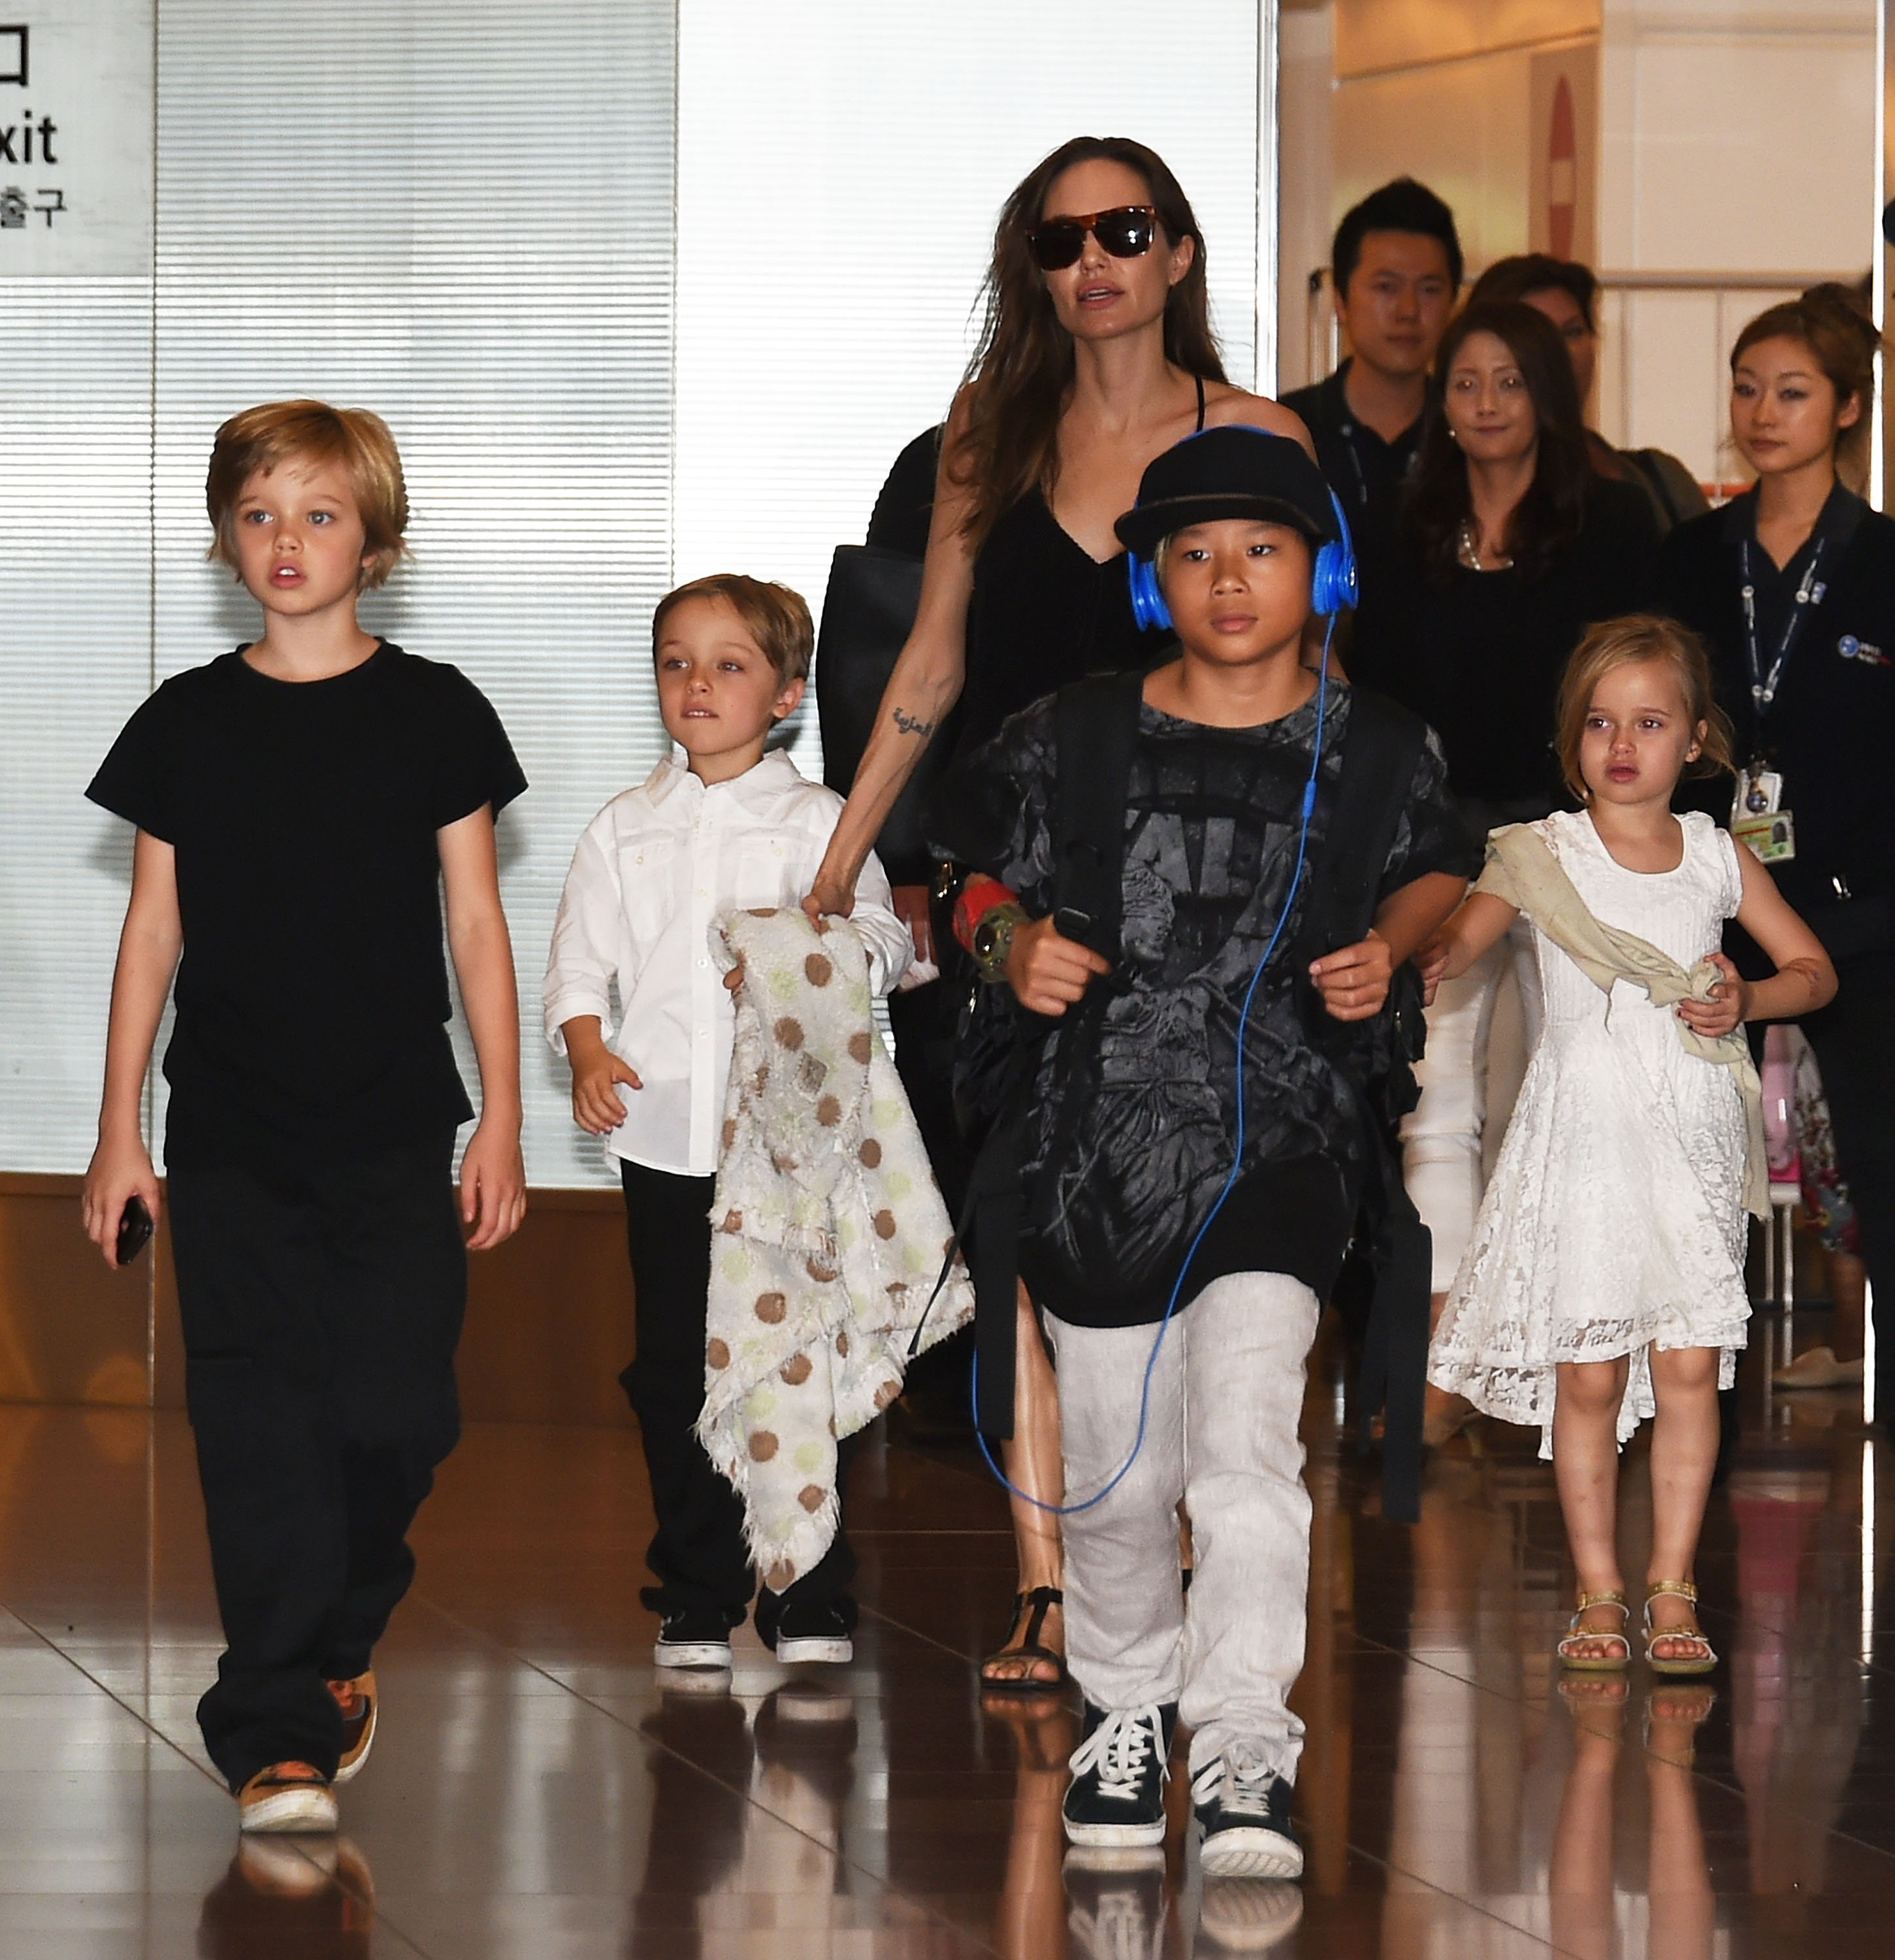 Shiloh Jolie-Pitt, Knox Jolie-Pitt, Angelina Jolie, Pax Jolie-Pitt und Vivienne Jolie-Pitt werden bei der Ankunft am Flughafen Haneda am 21. Juni 2014 in Tokio, Japan gesehen. | Quelle: Getty Images